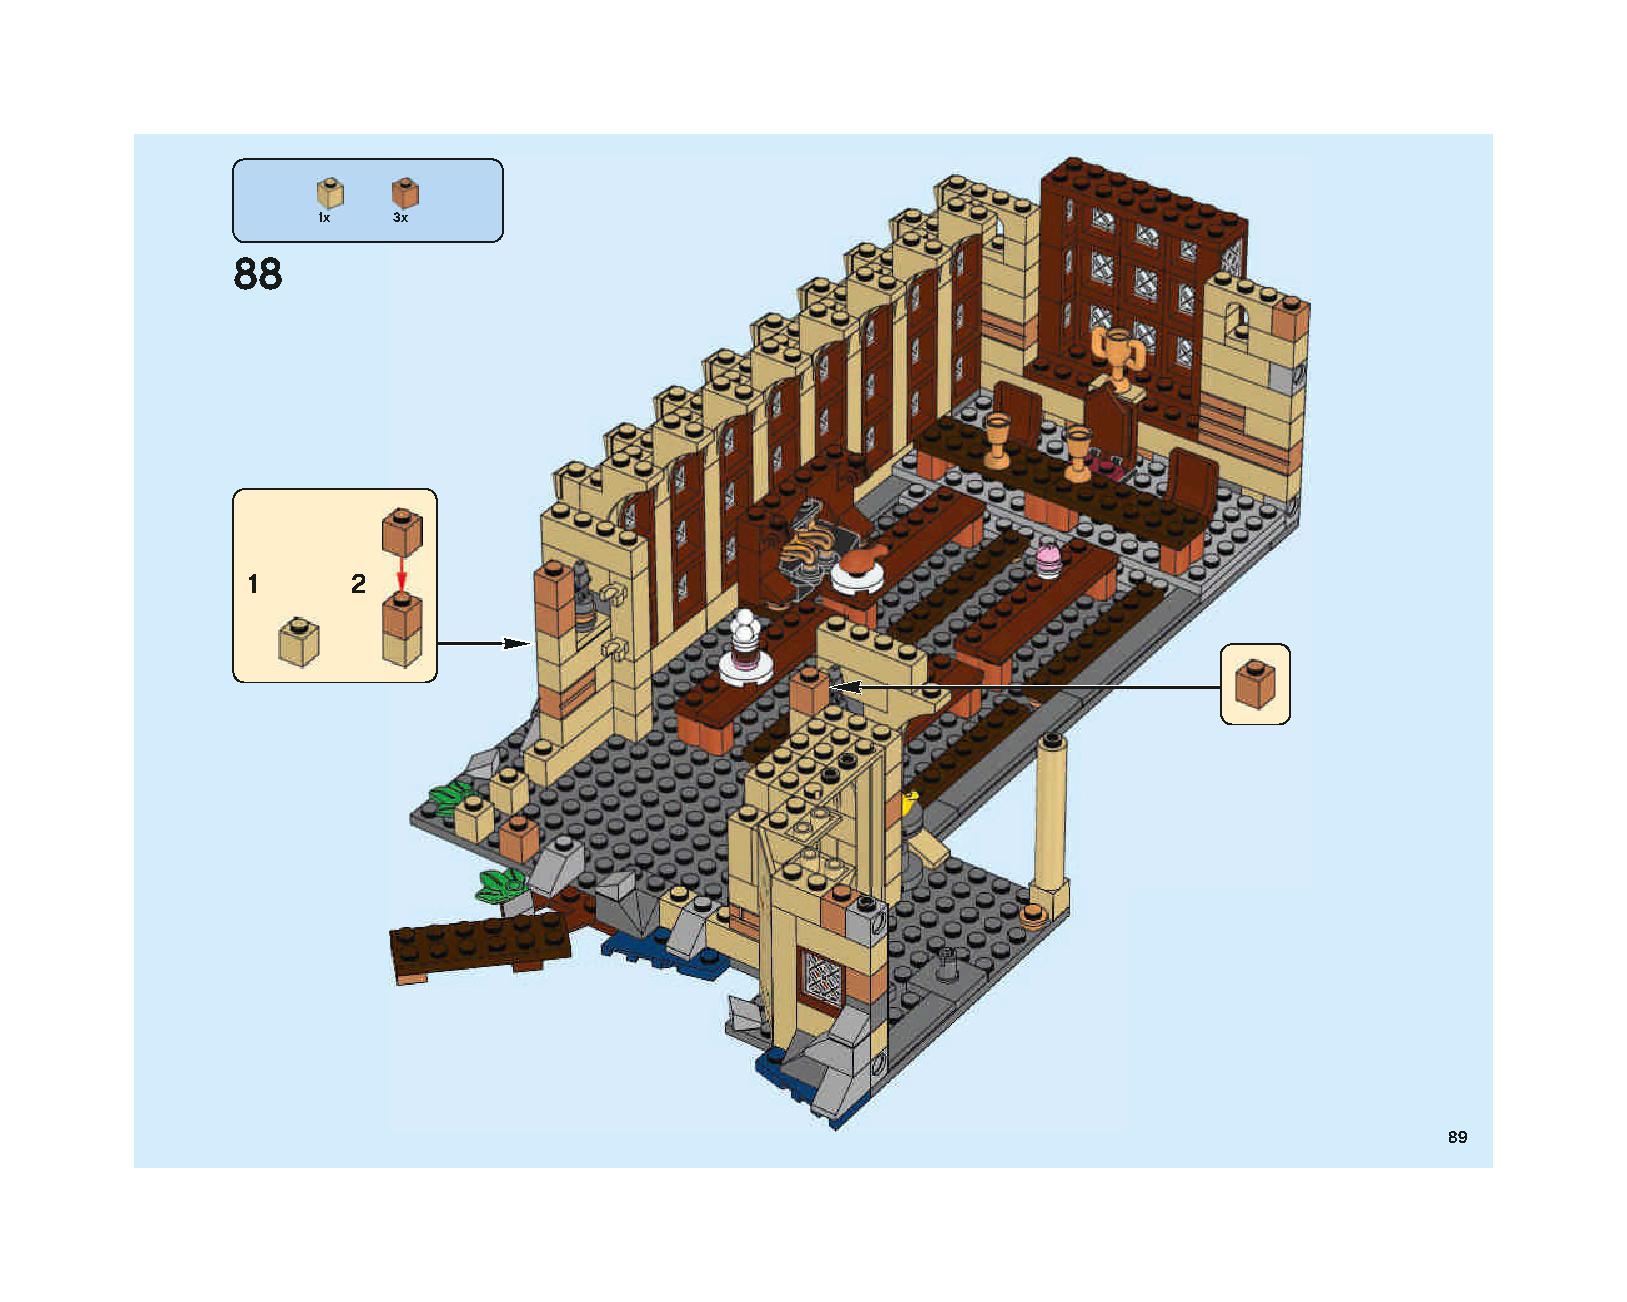 ホグワーツの大広間 75954 レゴの商品情報 レゴの説明書・組立方法 89 page